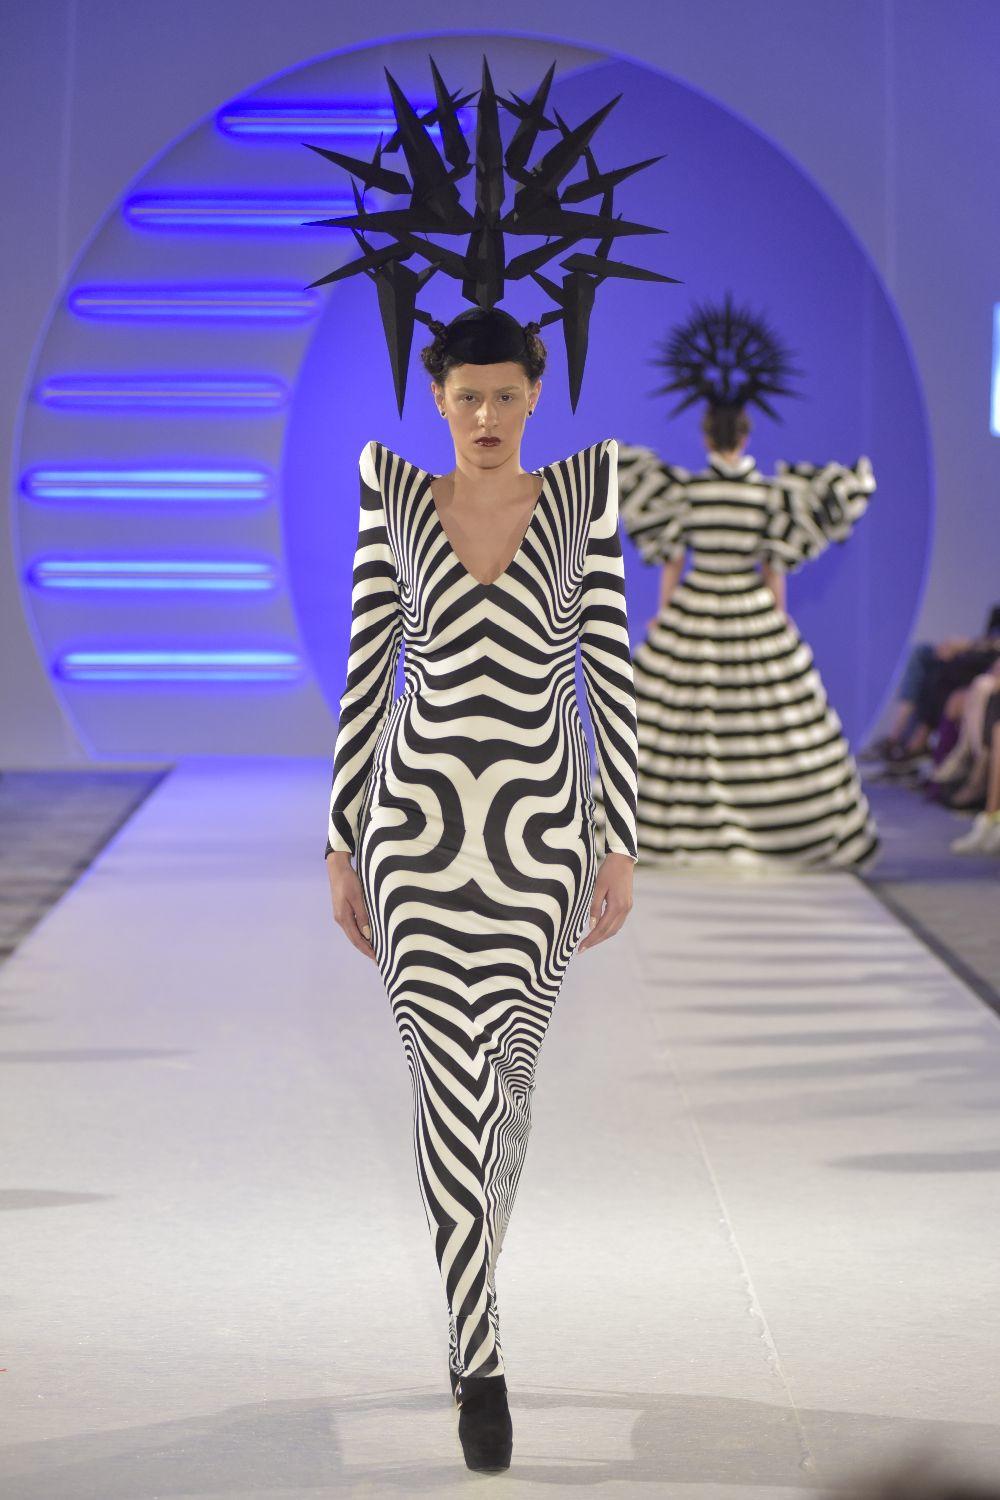 Ovogodišnjom kolekcijom koju je predstavila na Fashion Week-u, Ivana Pilja je još jednom oduševila sve prisutne. Pogledajte o čemu je reč.